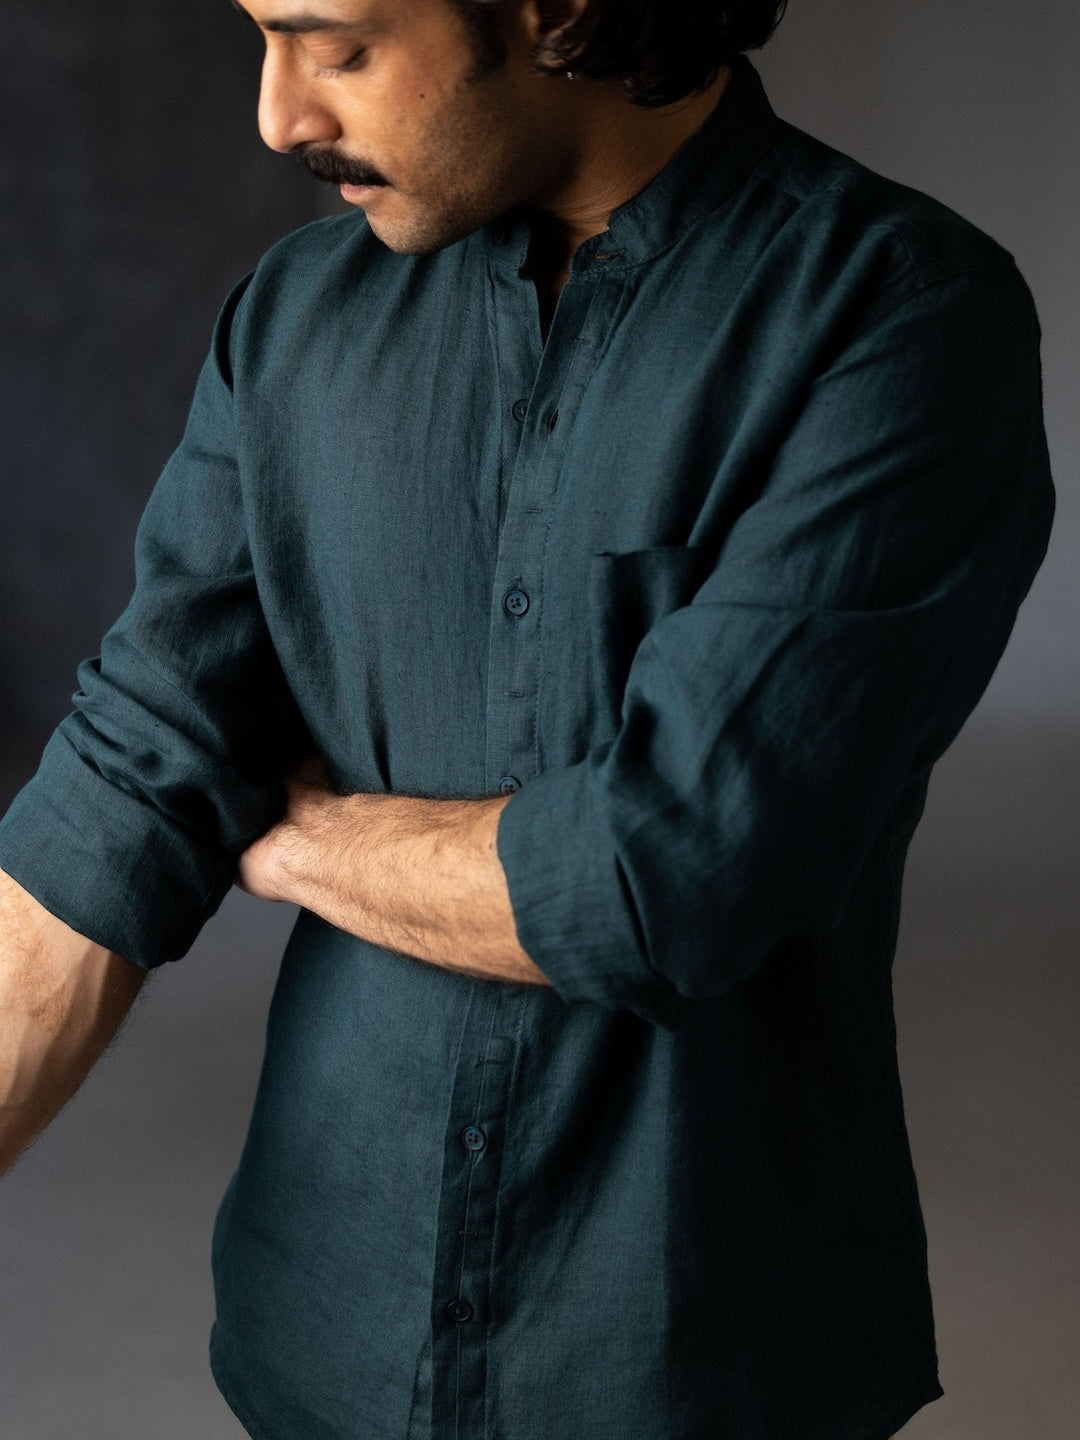 Men's Green 100% Linen Band Collared Regular Fit Long Sleeved Shirt